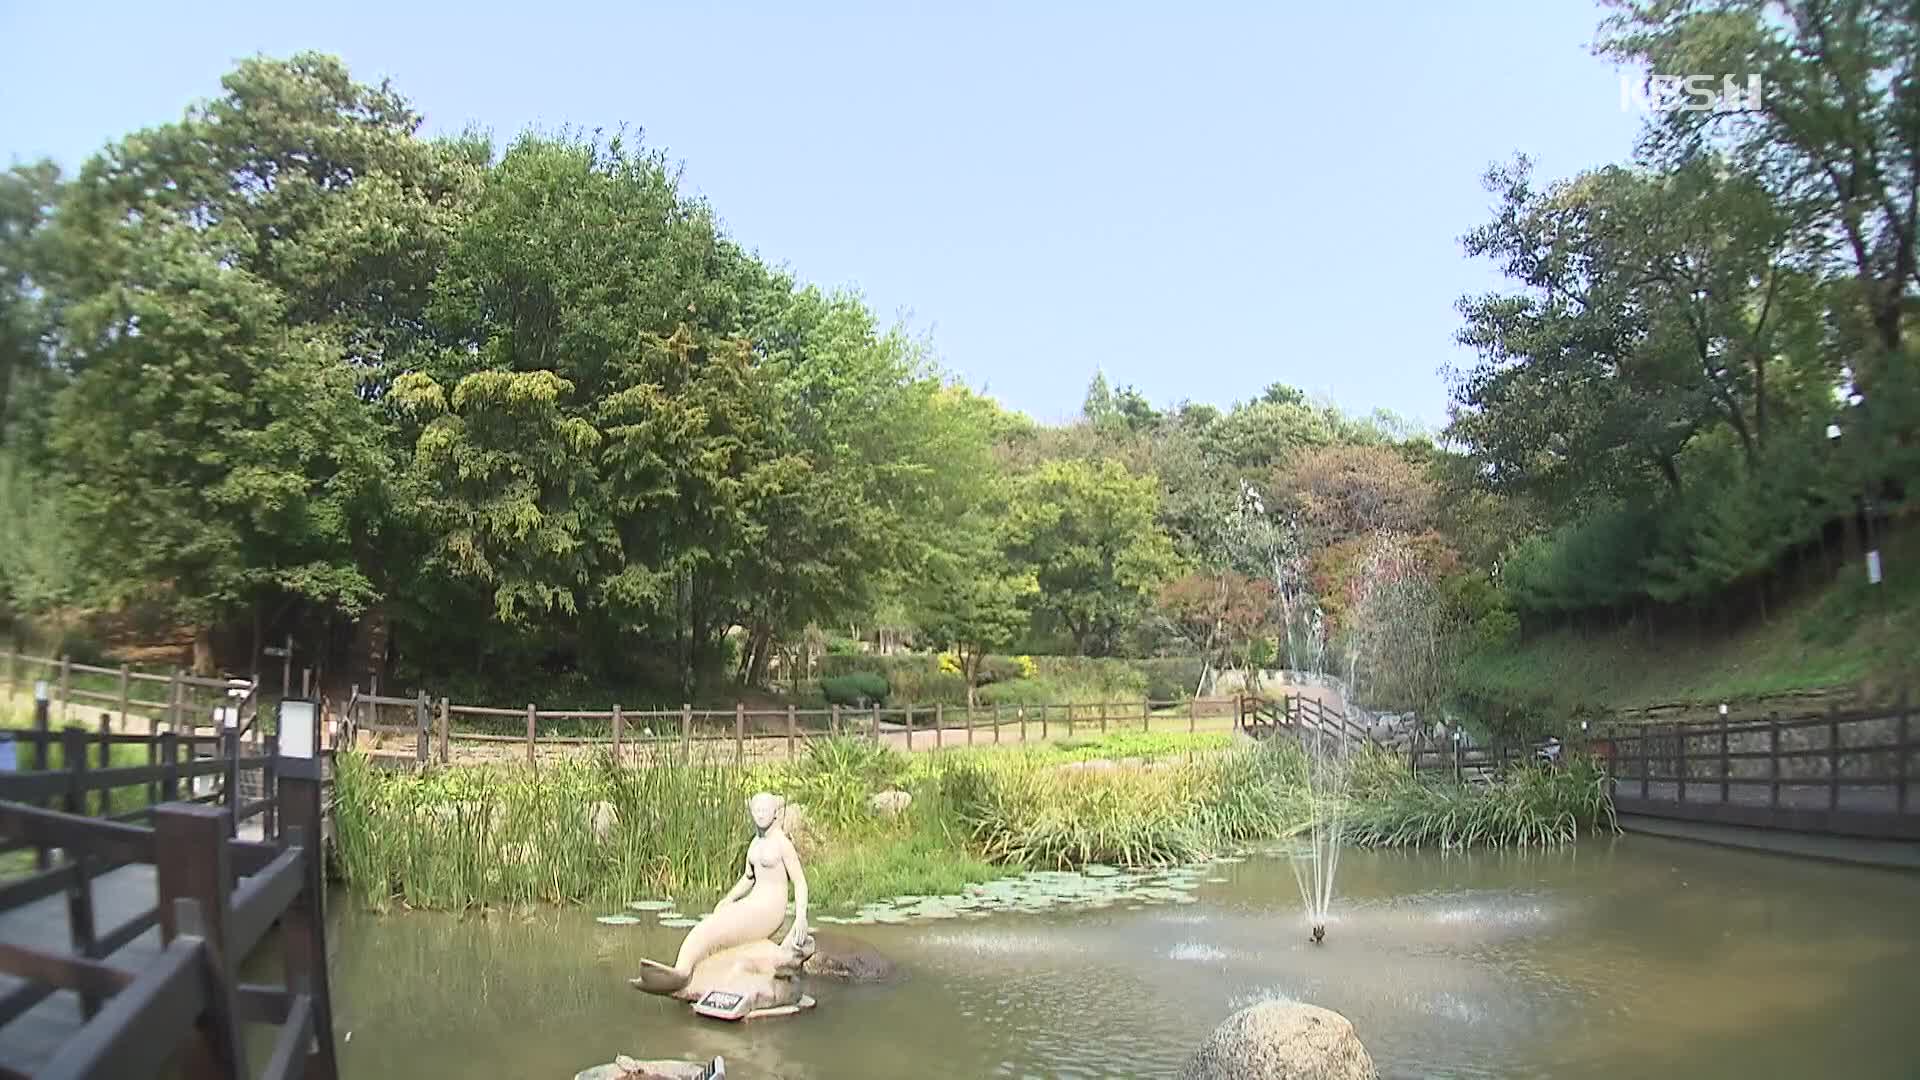 [뉴스광장 영상] 아차산생태공원